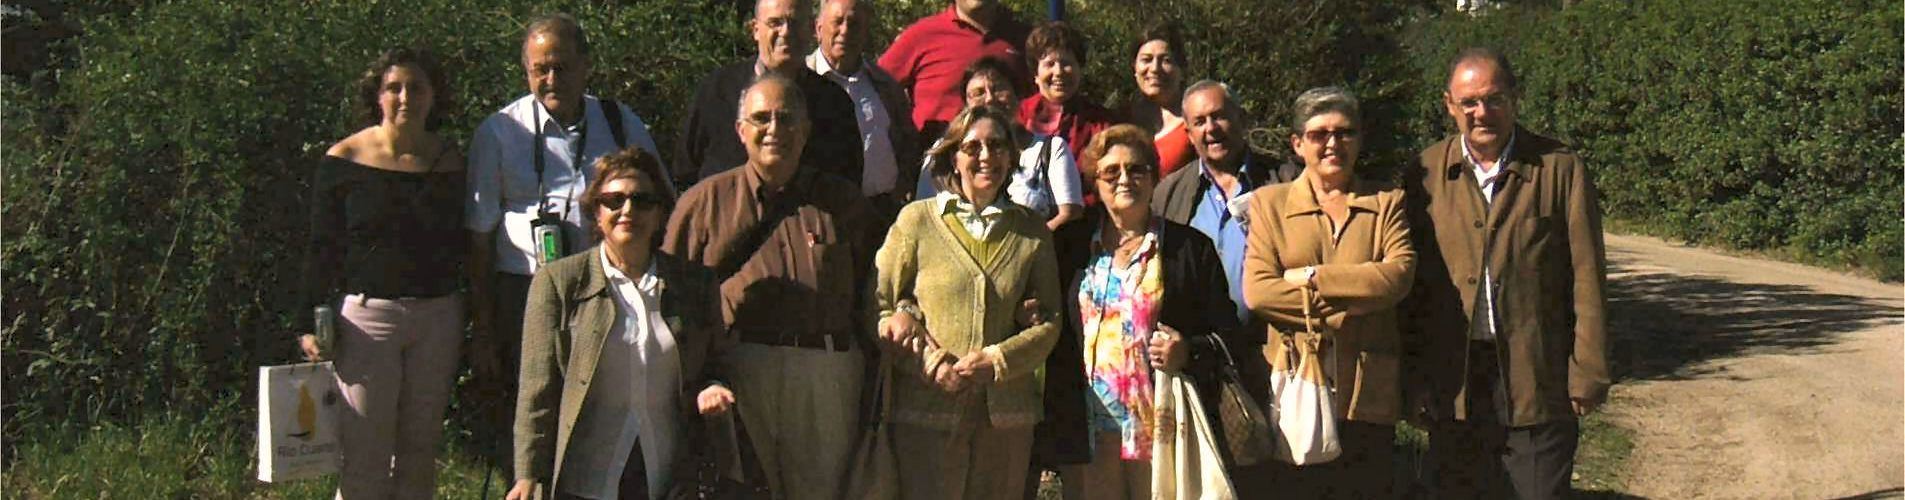 15 años del hermanamiento entre Vinaròs y Río Cuarto